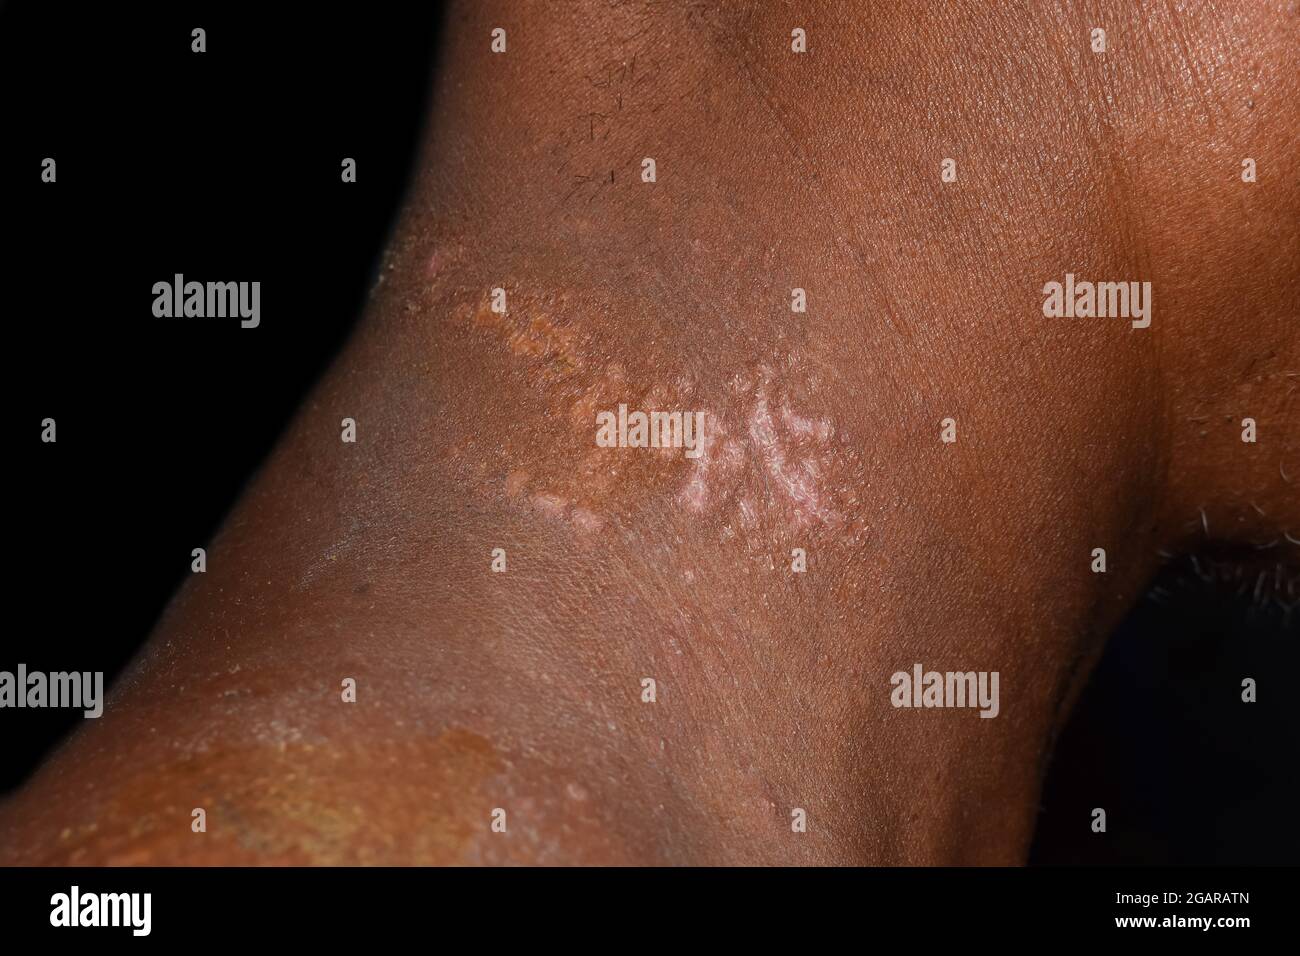 Tinea versicolor oder Pityriasis alba im Hals des südostasiatischen Mannes.  Isoliert auf Schwarz Stockfotografie - Alamy